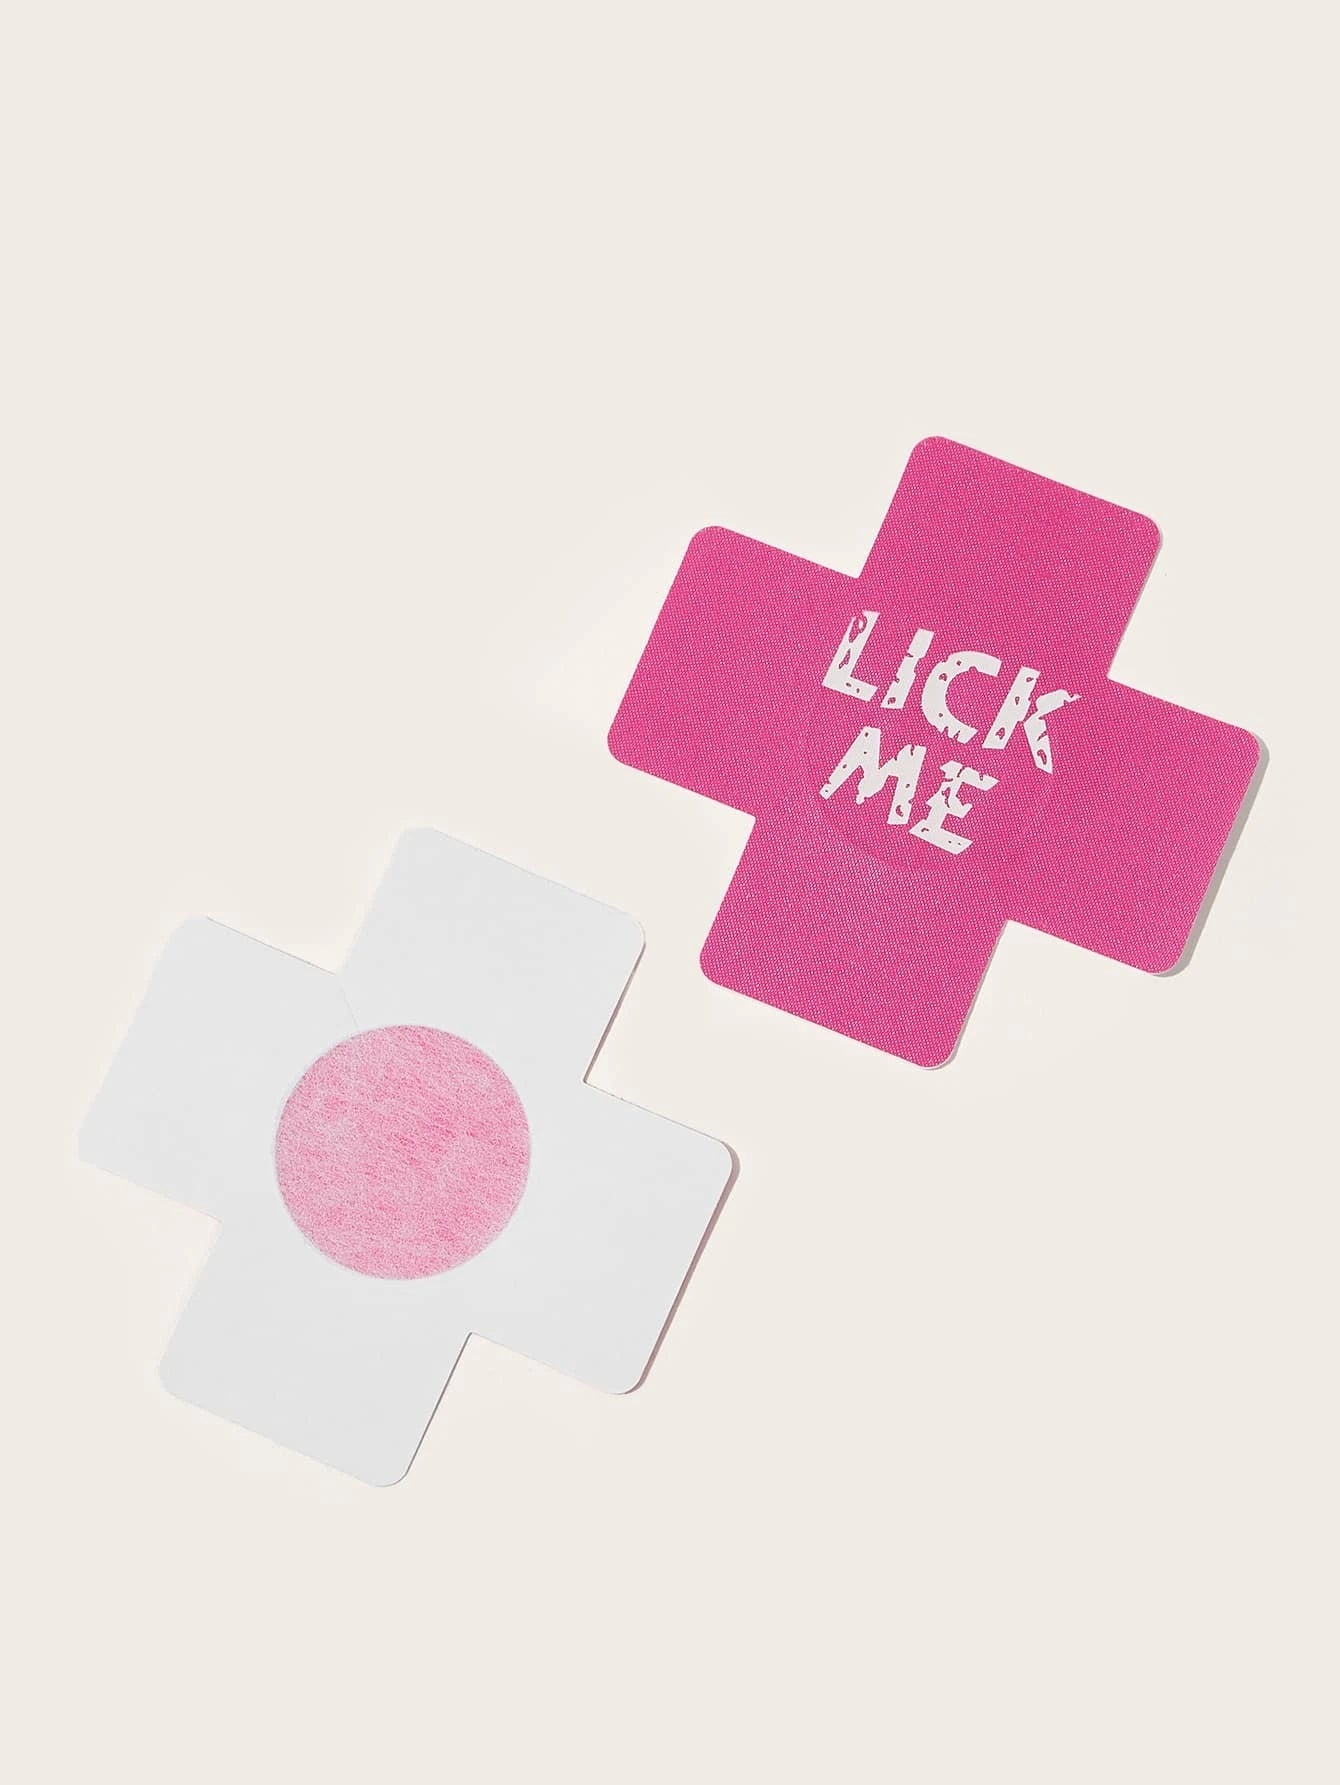 Parches para Pezones | Kiss Me / Lick Me / Love Me | Negro / Rosado / Blanco | CL-PE-03